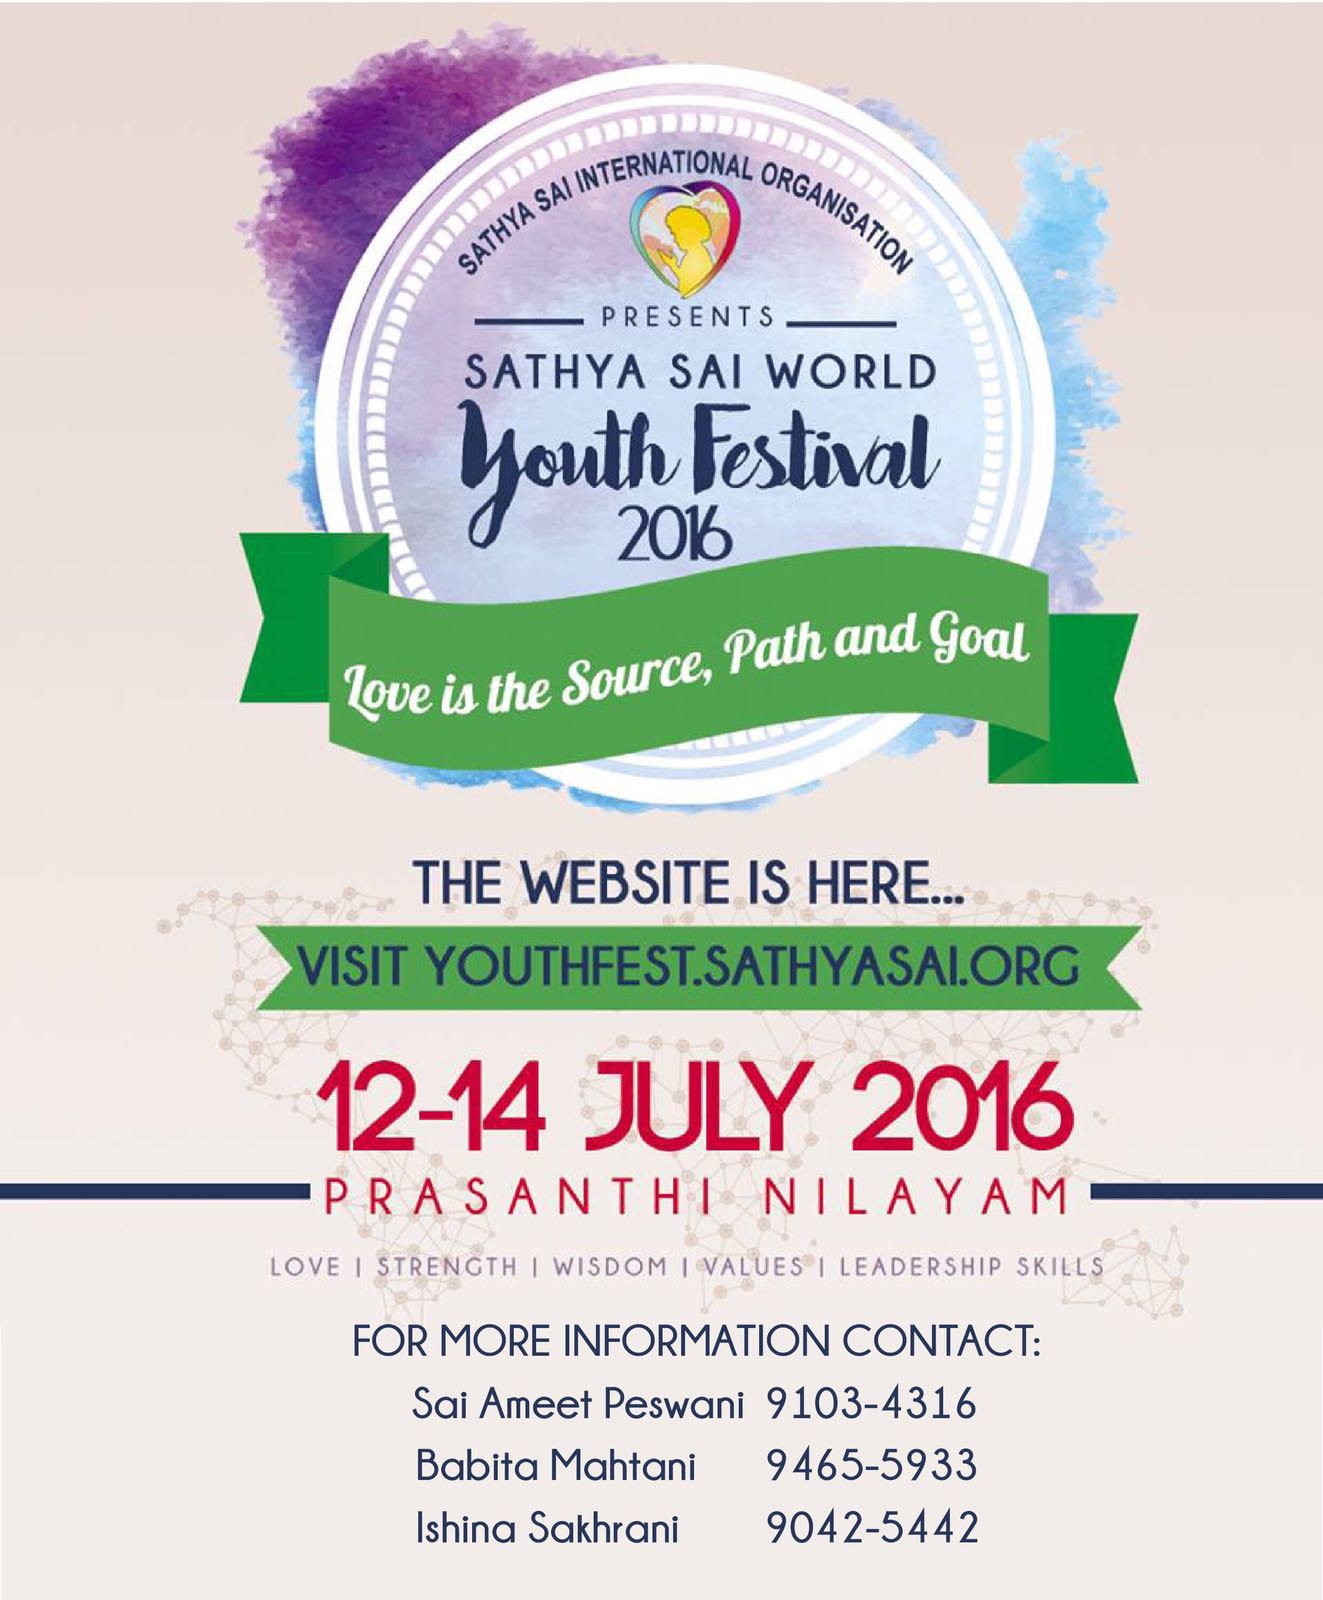 Sathya Sai World Youth Festival 2016